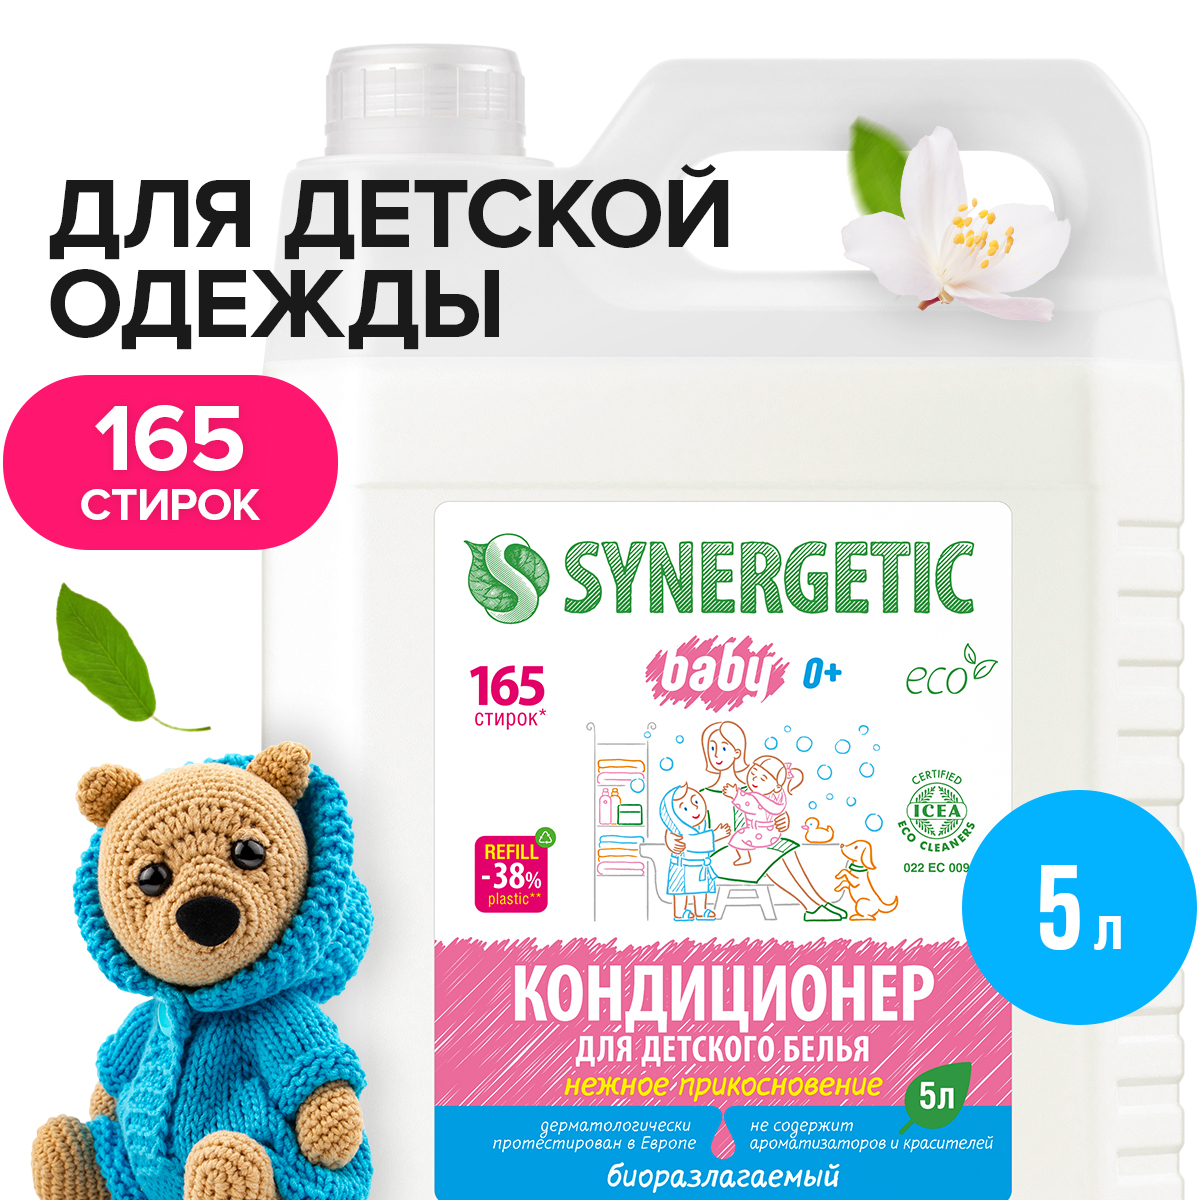 Кондиционер для белья детский SYNERGETIC гипоаллергенный, без запаха, 5 л, 165 стирок - купить в Мегамаркет Москва Пушкино, цена на Мегамаркет